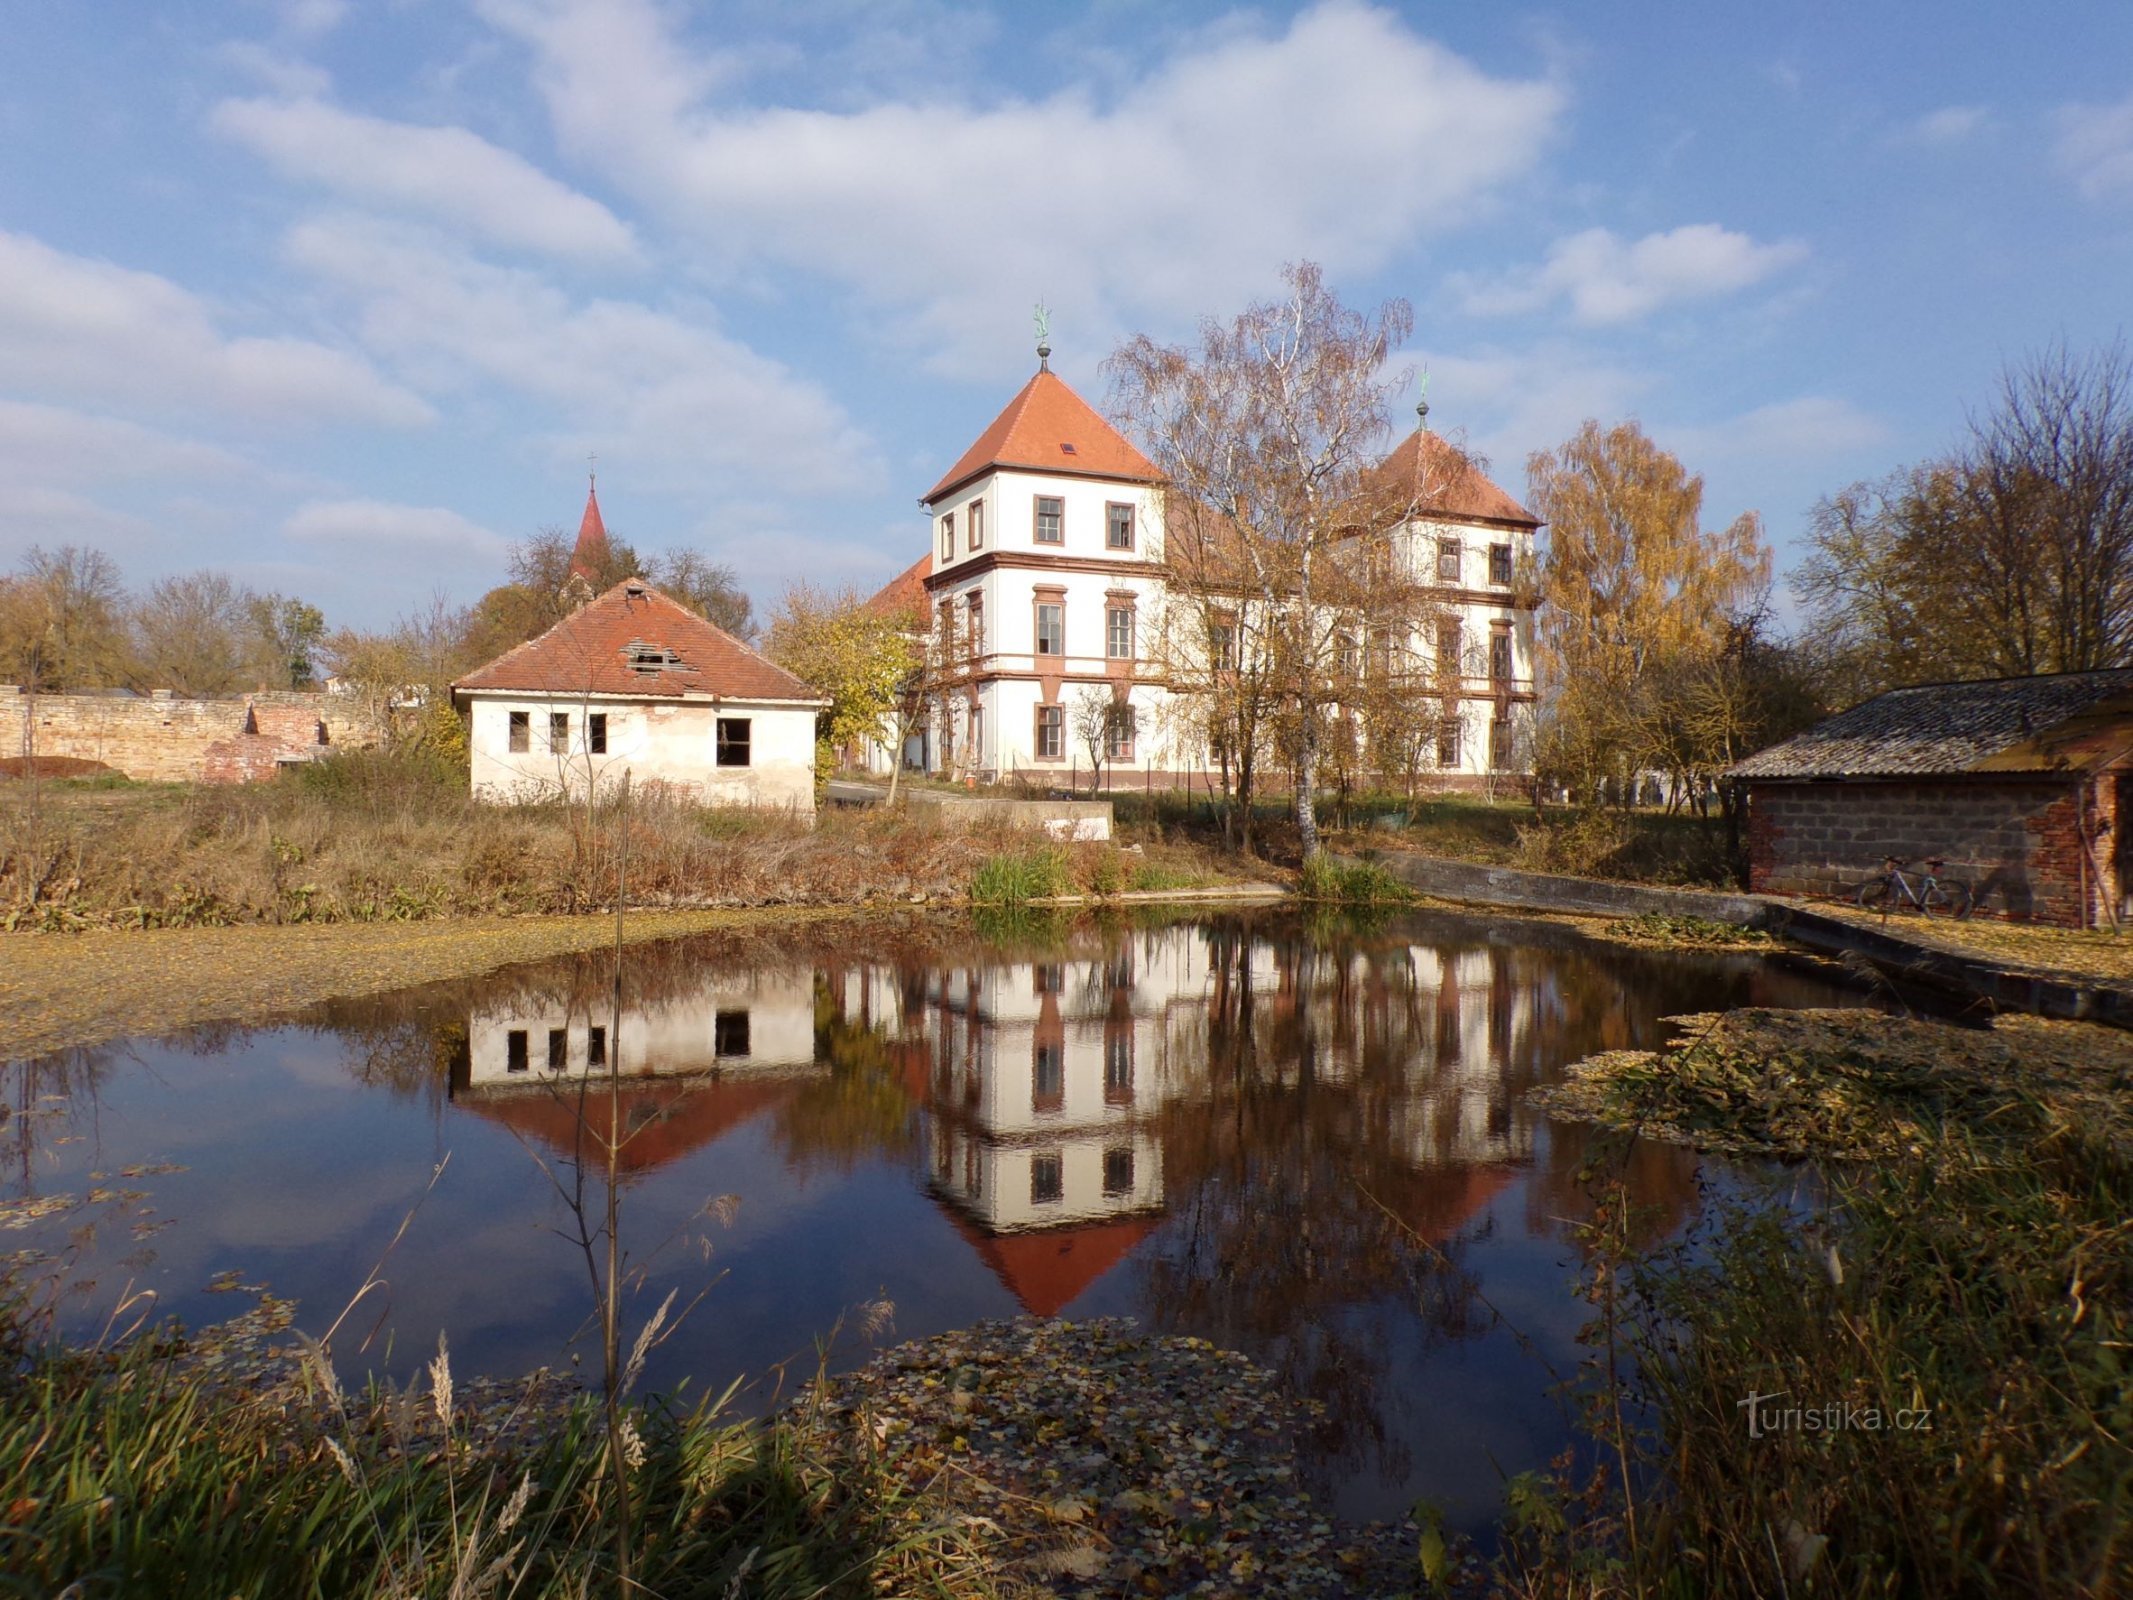 Barbora Pond (Hořiněves, 1.11.2021/XNUMX/XNUMX)